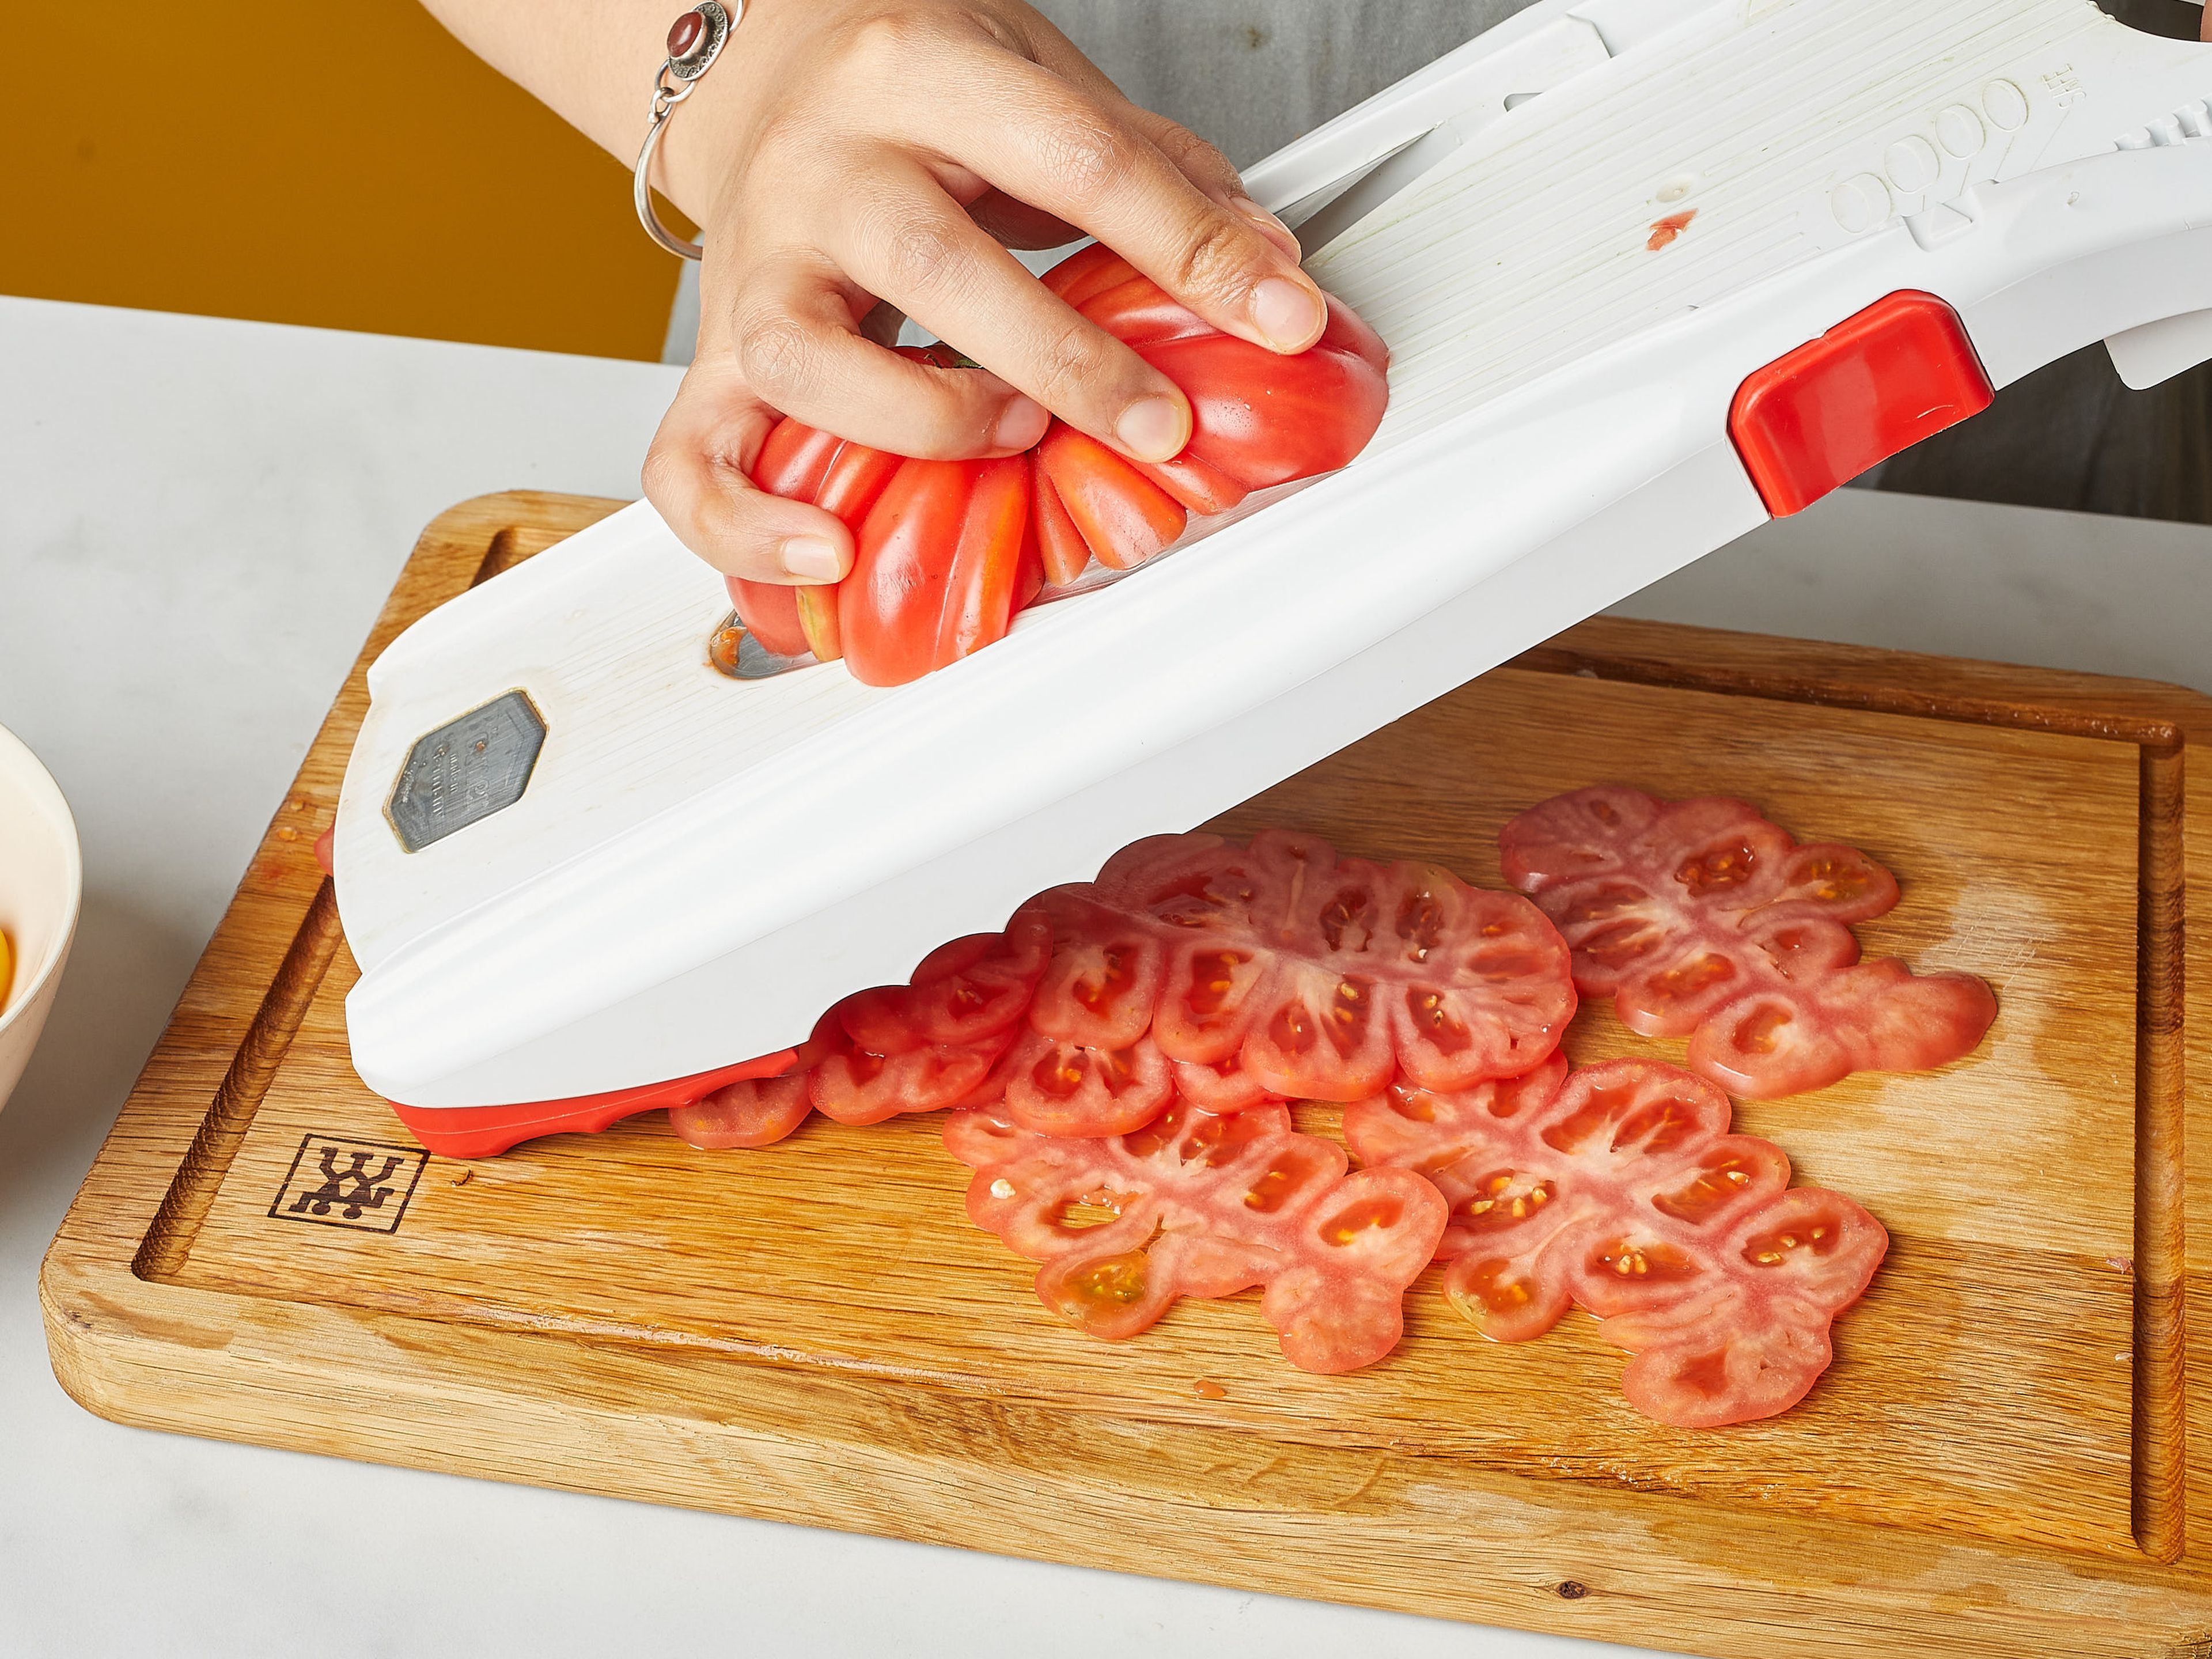 Den Ofen auf 200° vorheizen. Knoblauch fein hacken oder reiben. Größere Tomaten mit Hilfe eines Gemüsehobels, falls du einen hast, in sehr dünne Scheiben schneiden. Cherrytomaten halbieren. In eine Auflaufform geben, salzen und ca. 10 min. stehen lassen, damit die Flüssigkeit etwas austritt.